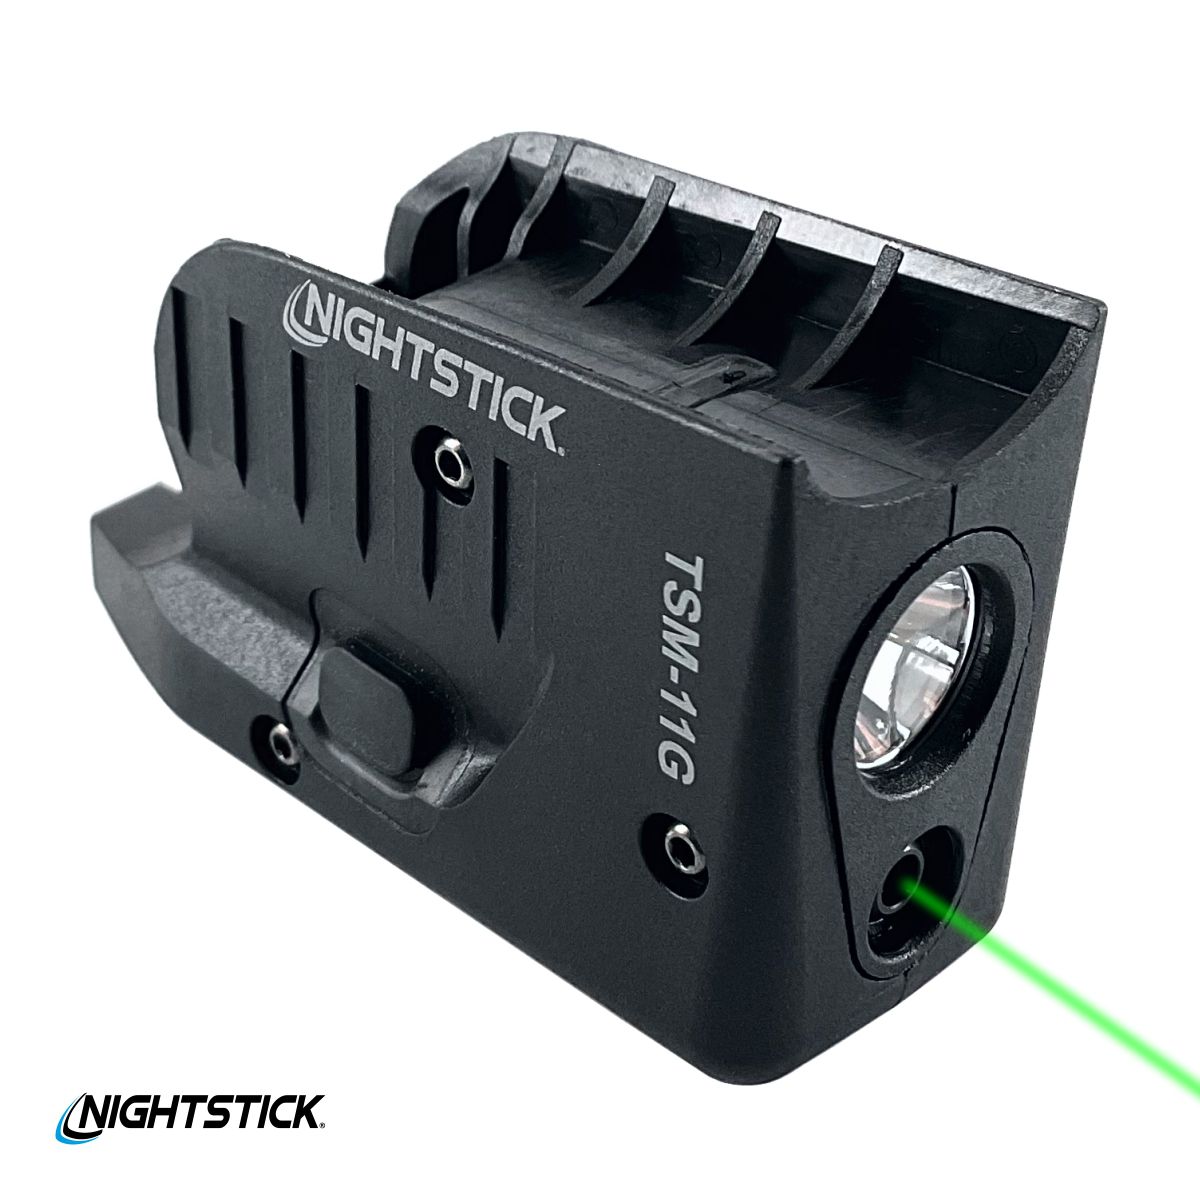 Nightstick TSM-12G svítilna se zeleným laserem pro pistole Glock 26, 27, 33 a 39